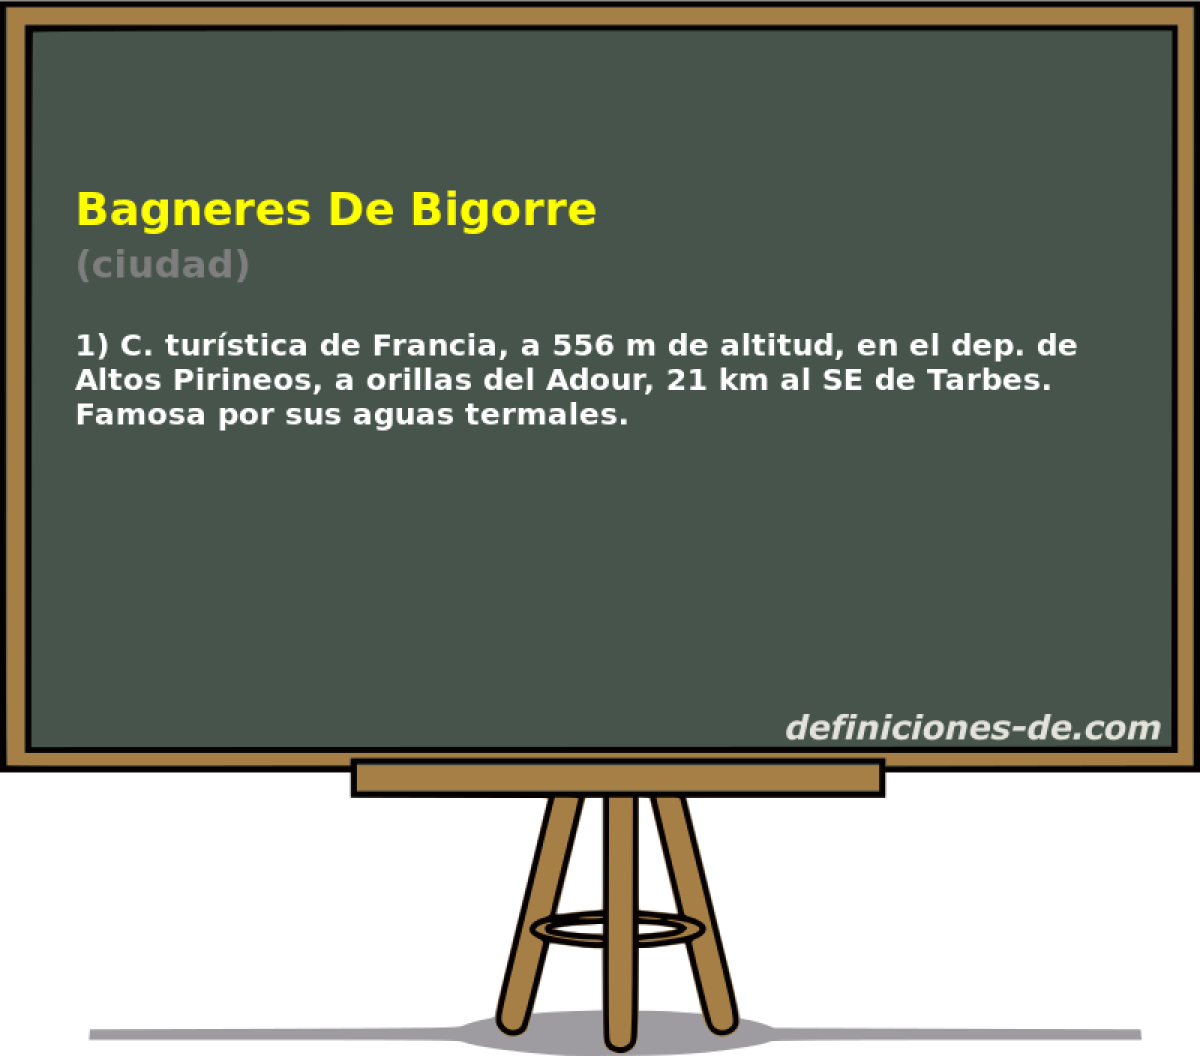 Bagneres De Bigorre (ciudad)